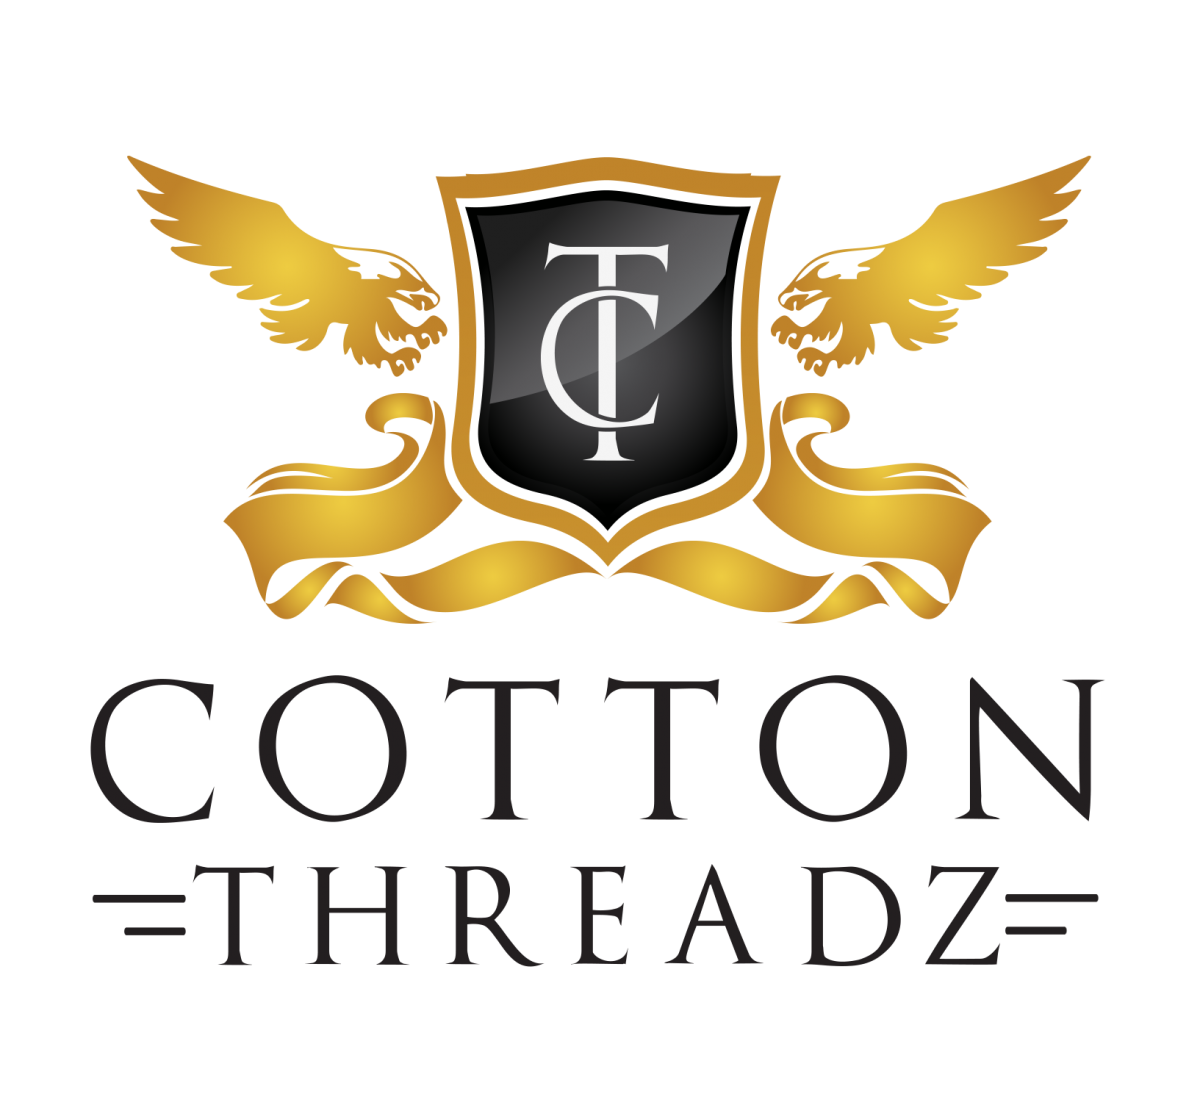 Cotton Threadz